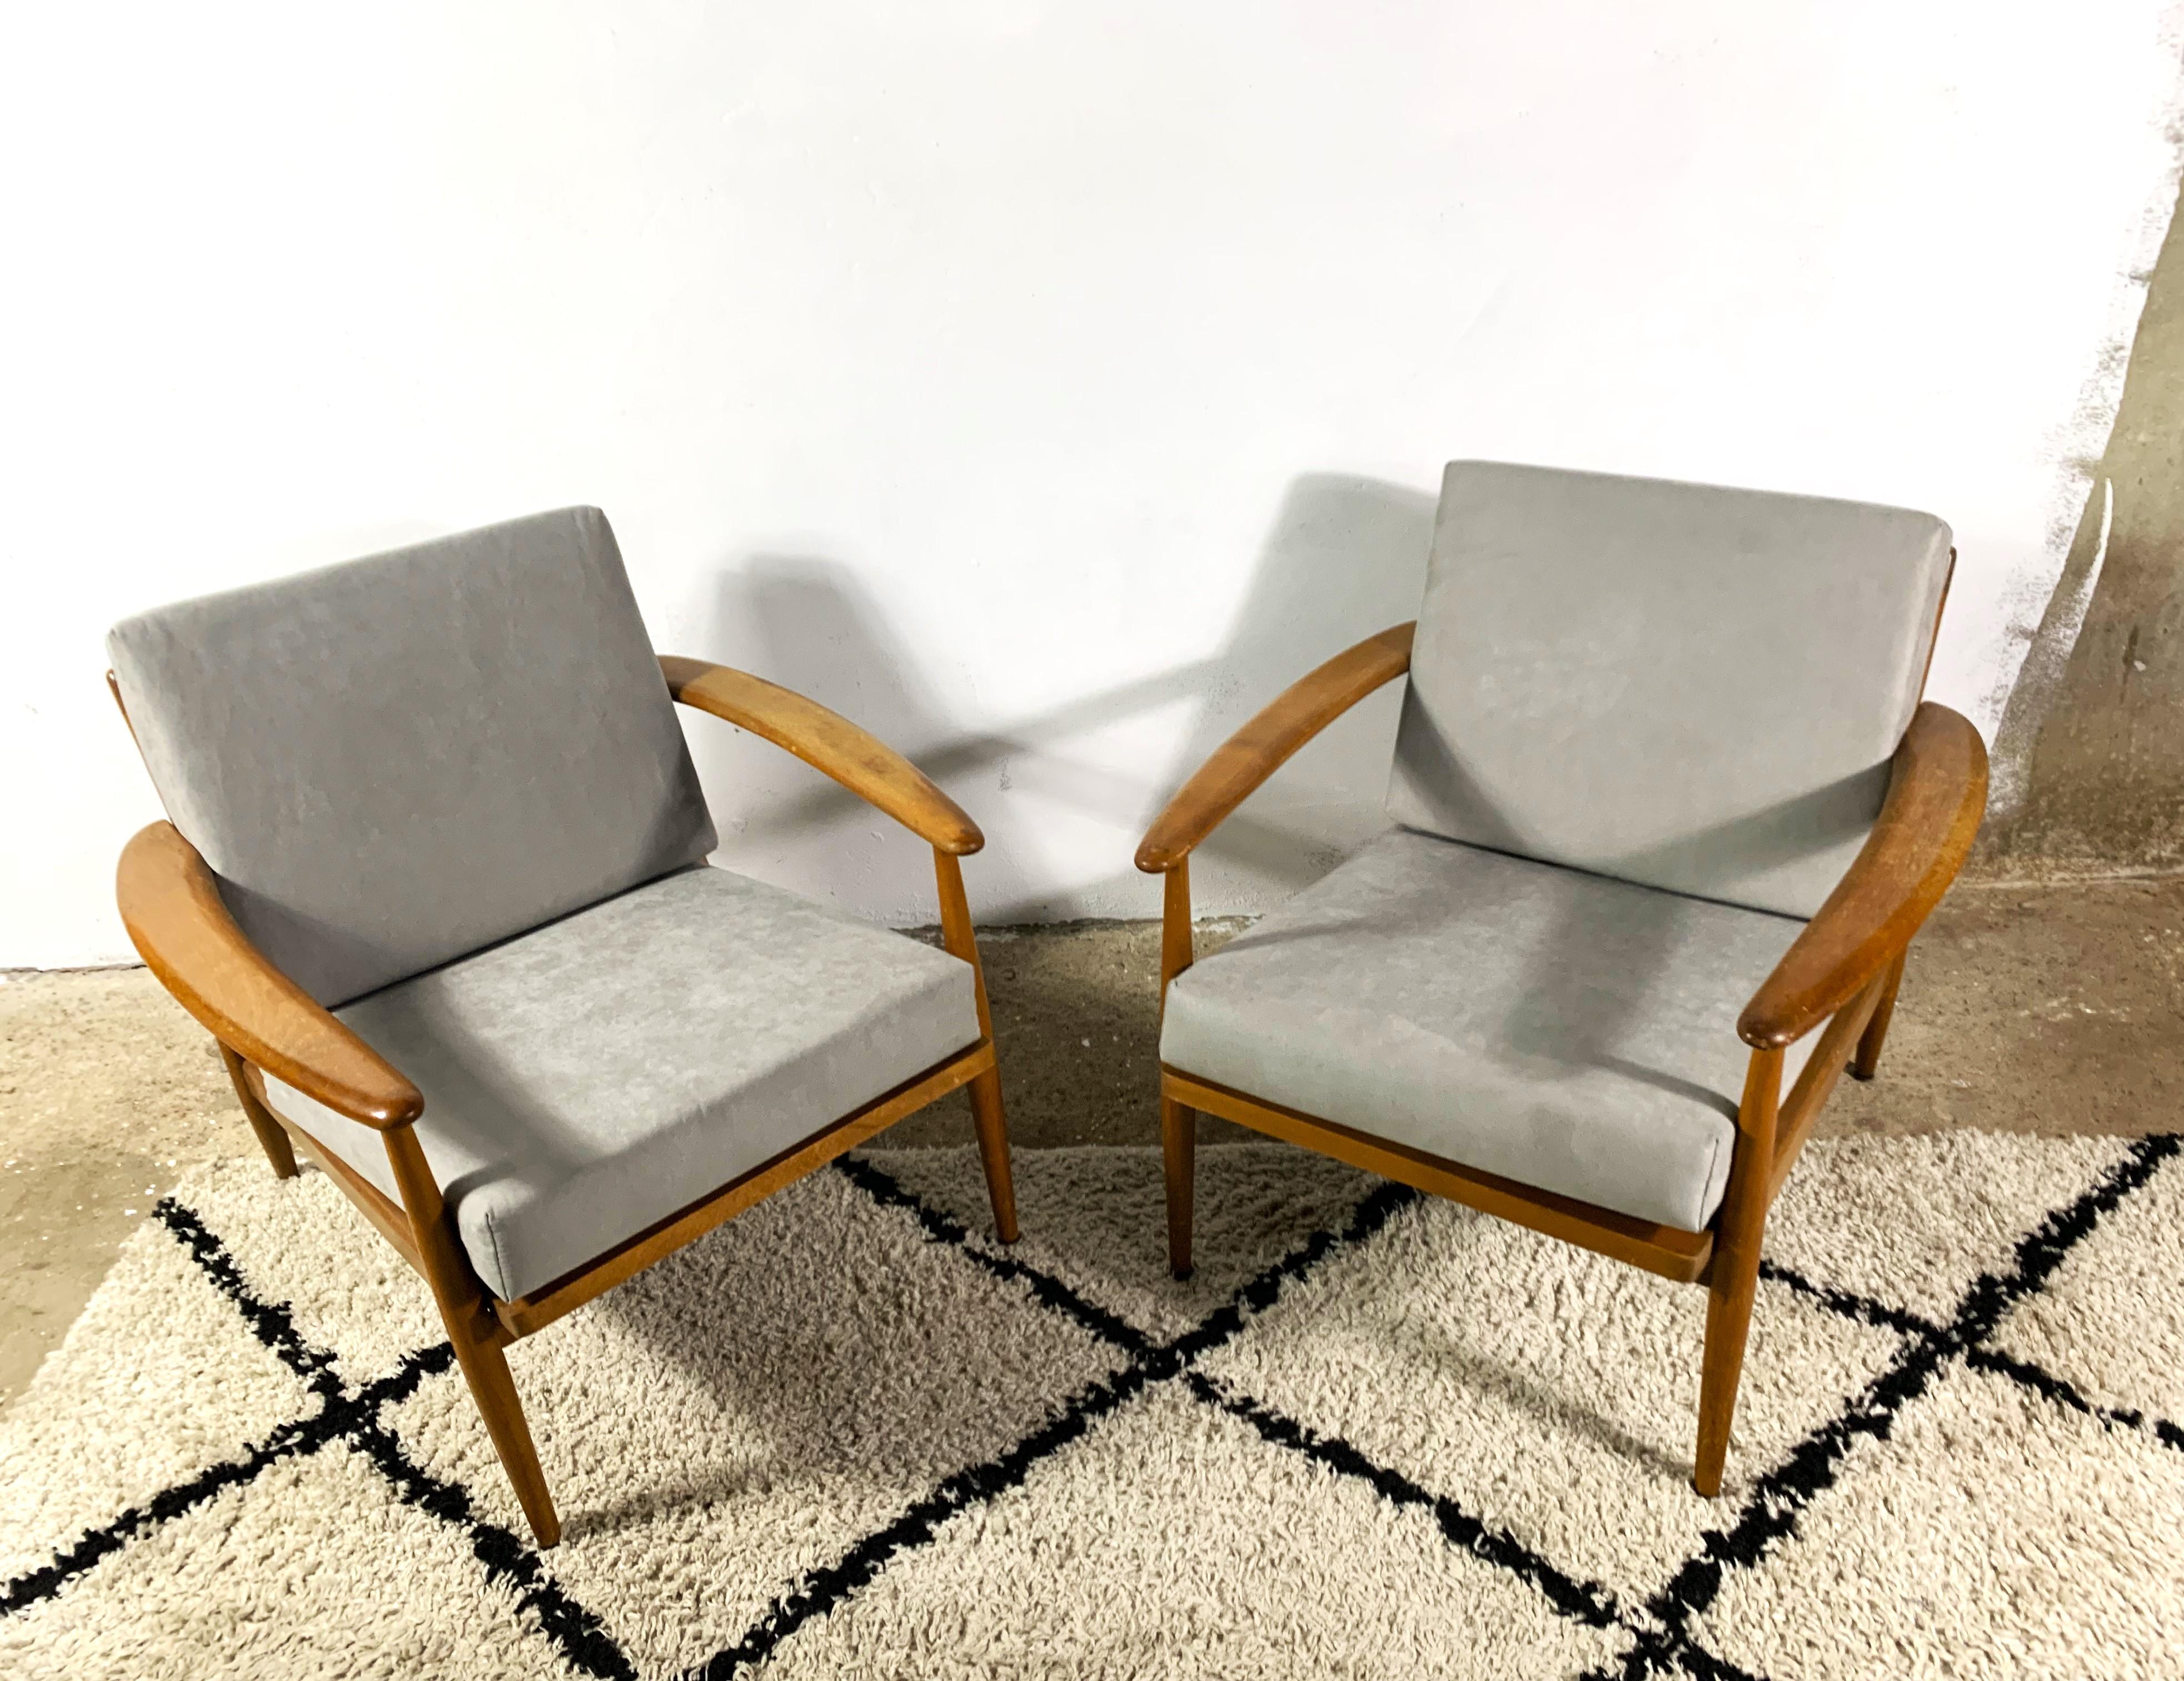 Ein Paar skandinavische Loungesessel aus den 1960er Jahren. Die Konstruktion ist aus lackiertem Buchenholz, im Stil von Grete Jalk, gefertigt. Die Sitzfläche und die Rückenlehne sind neu gepolstert und gepolstert, abnehmbar und waschbar. Bequem und